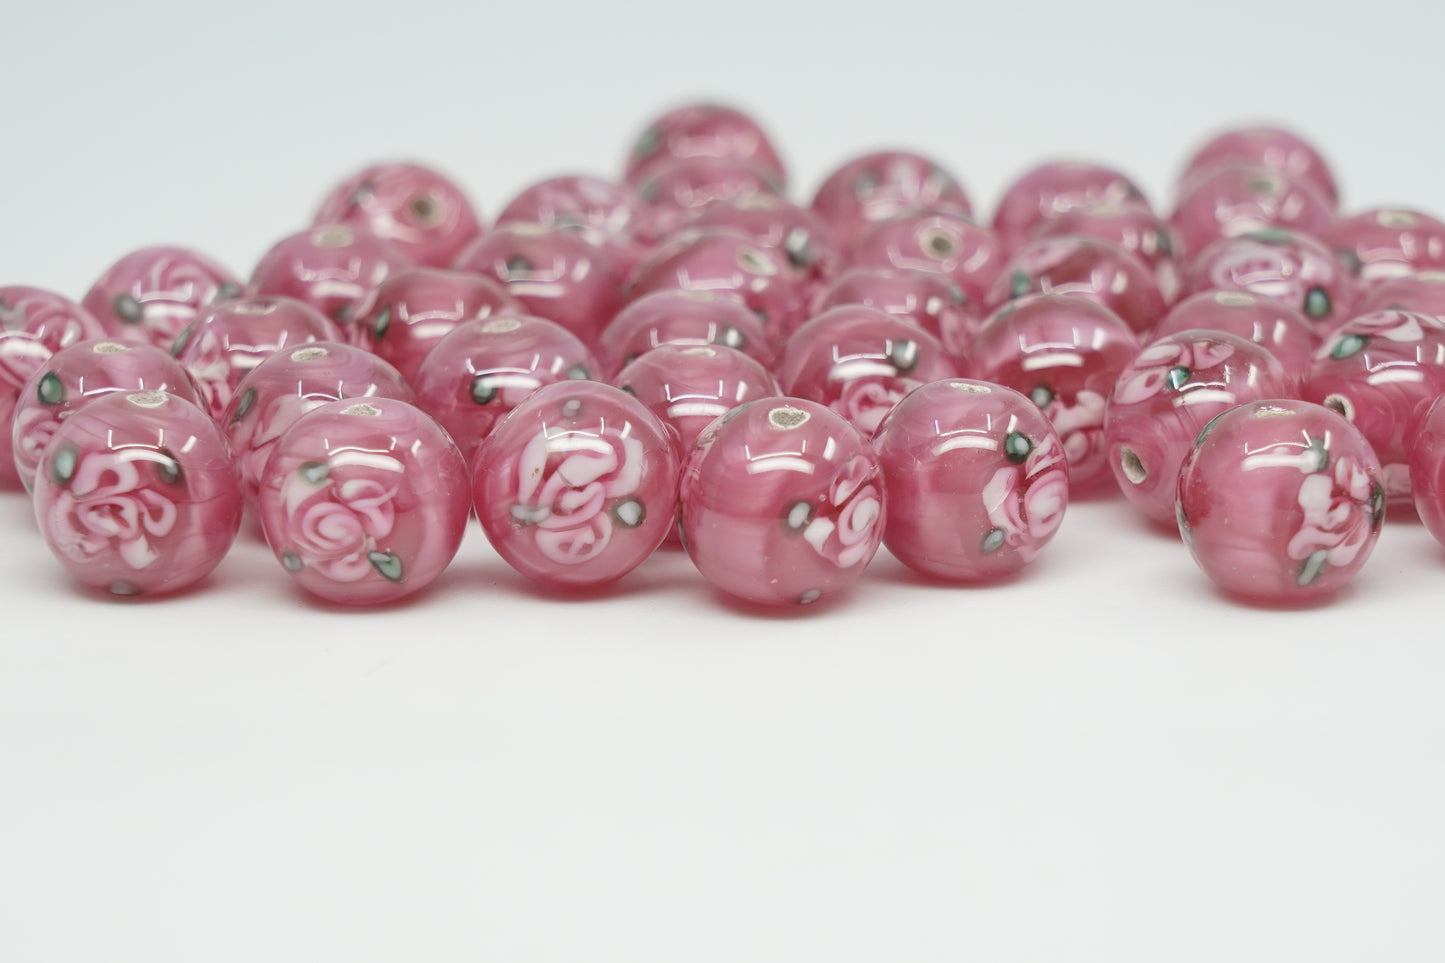 Lampwork HandMade Beads, Pink with Flower, Glass, Czech Republic